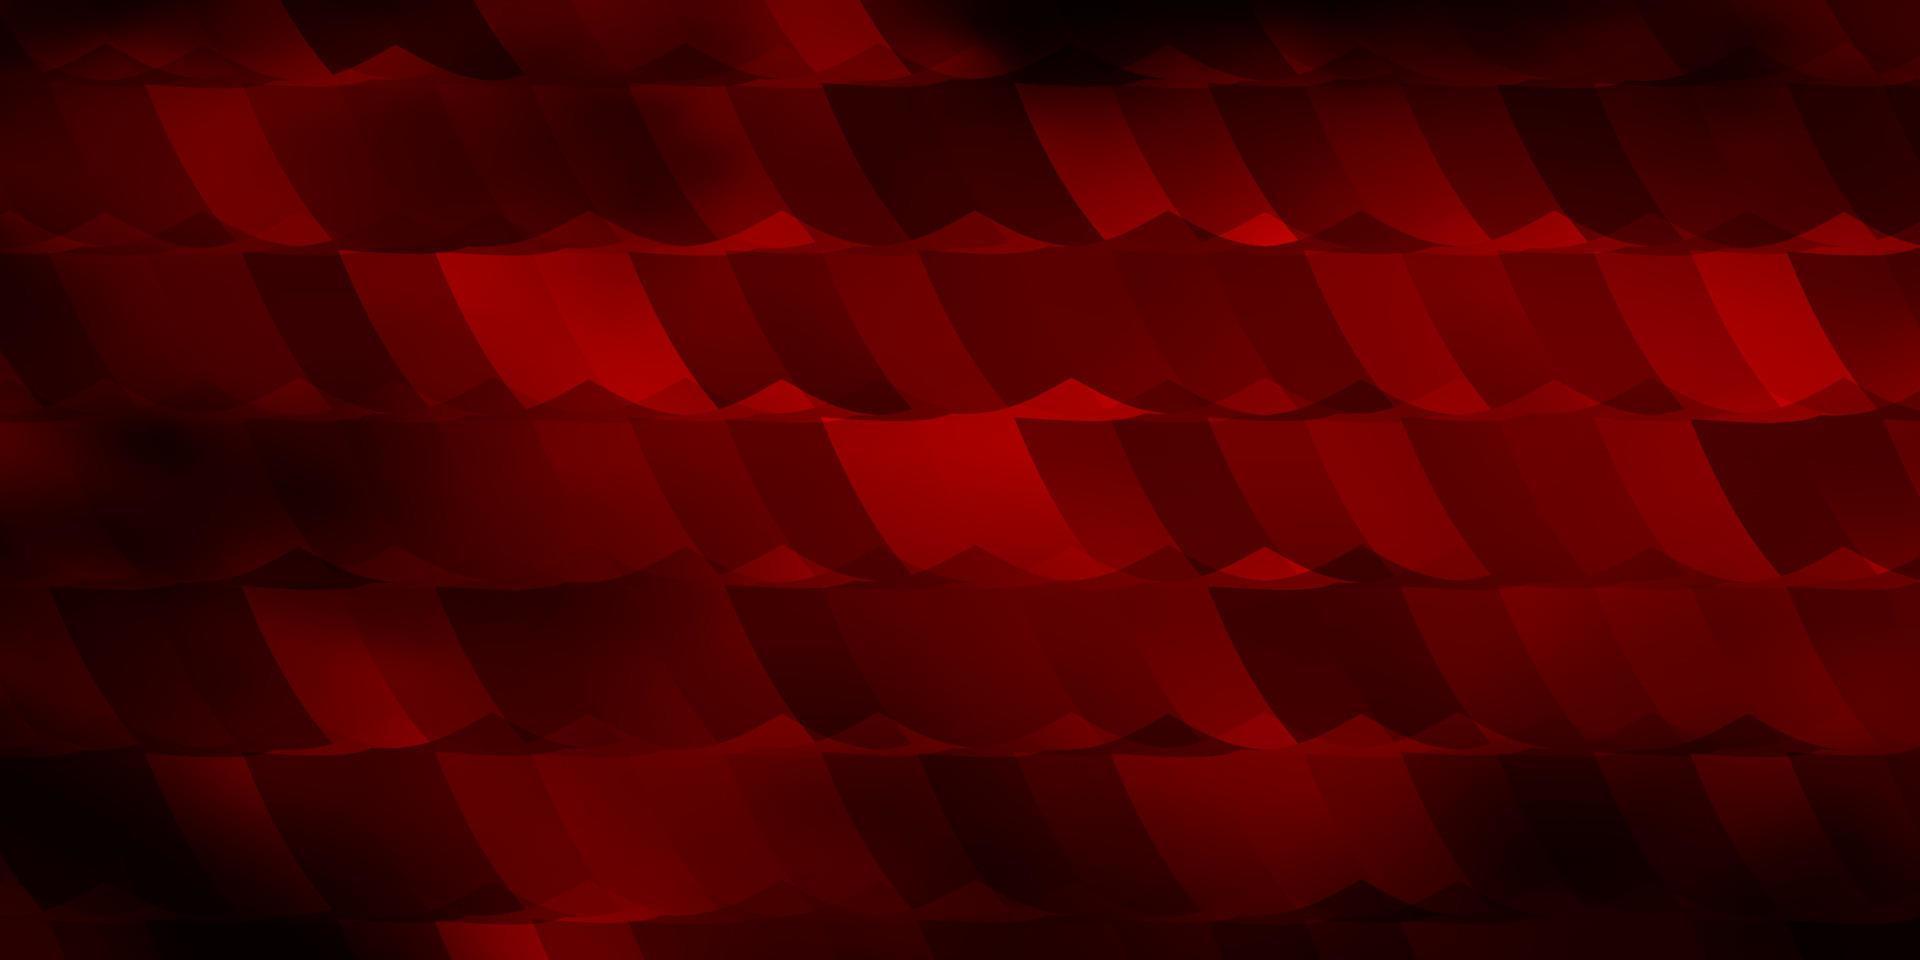 sfondo vettoriale rosso scuro con set di esagoni.